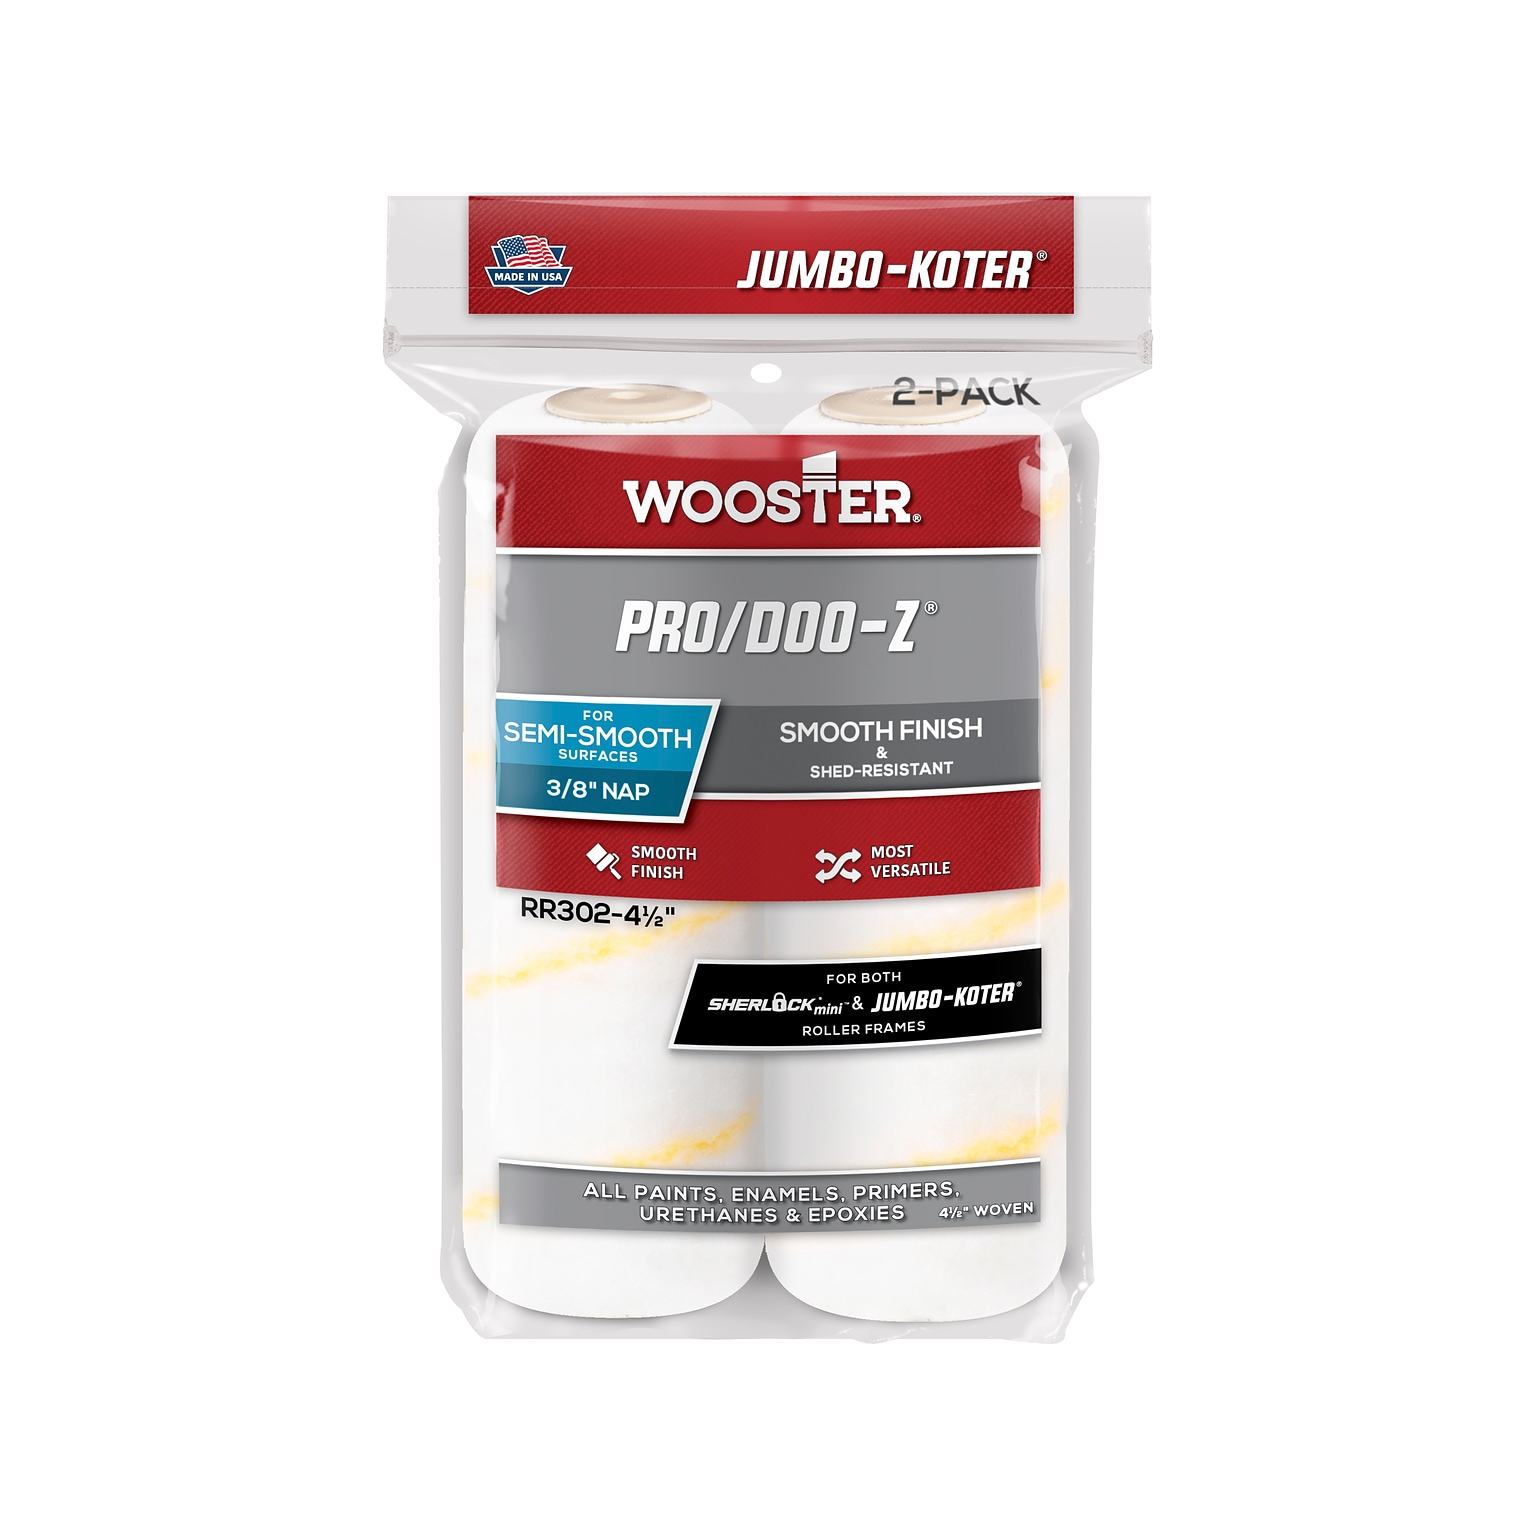 Wooster Brush Jumbo-Koter Pro/Doo-Z Roller Cover, 4.5L, 0.38 Nap, 2/Pack, 12 Packs/Carton (0RR3020044)